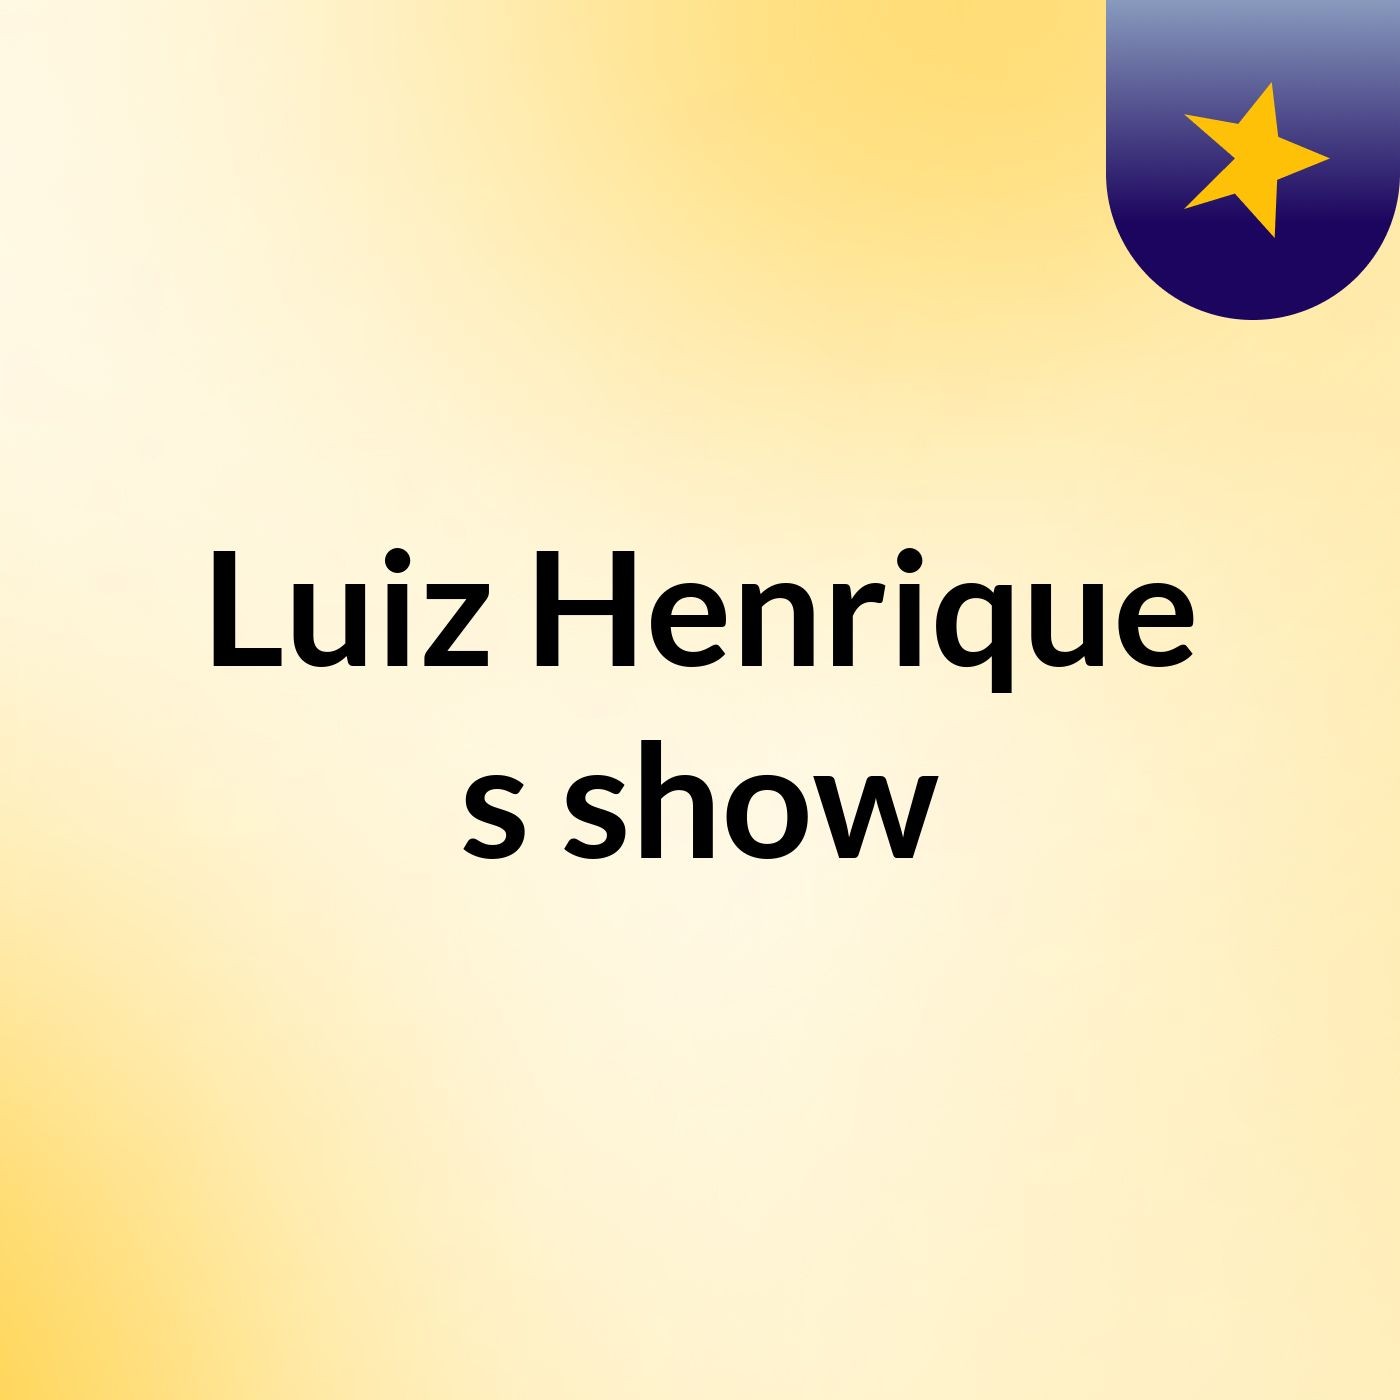 Luiz Henrique's show